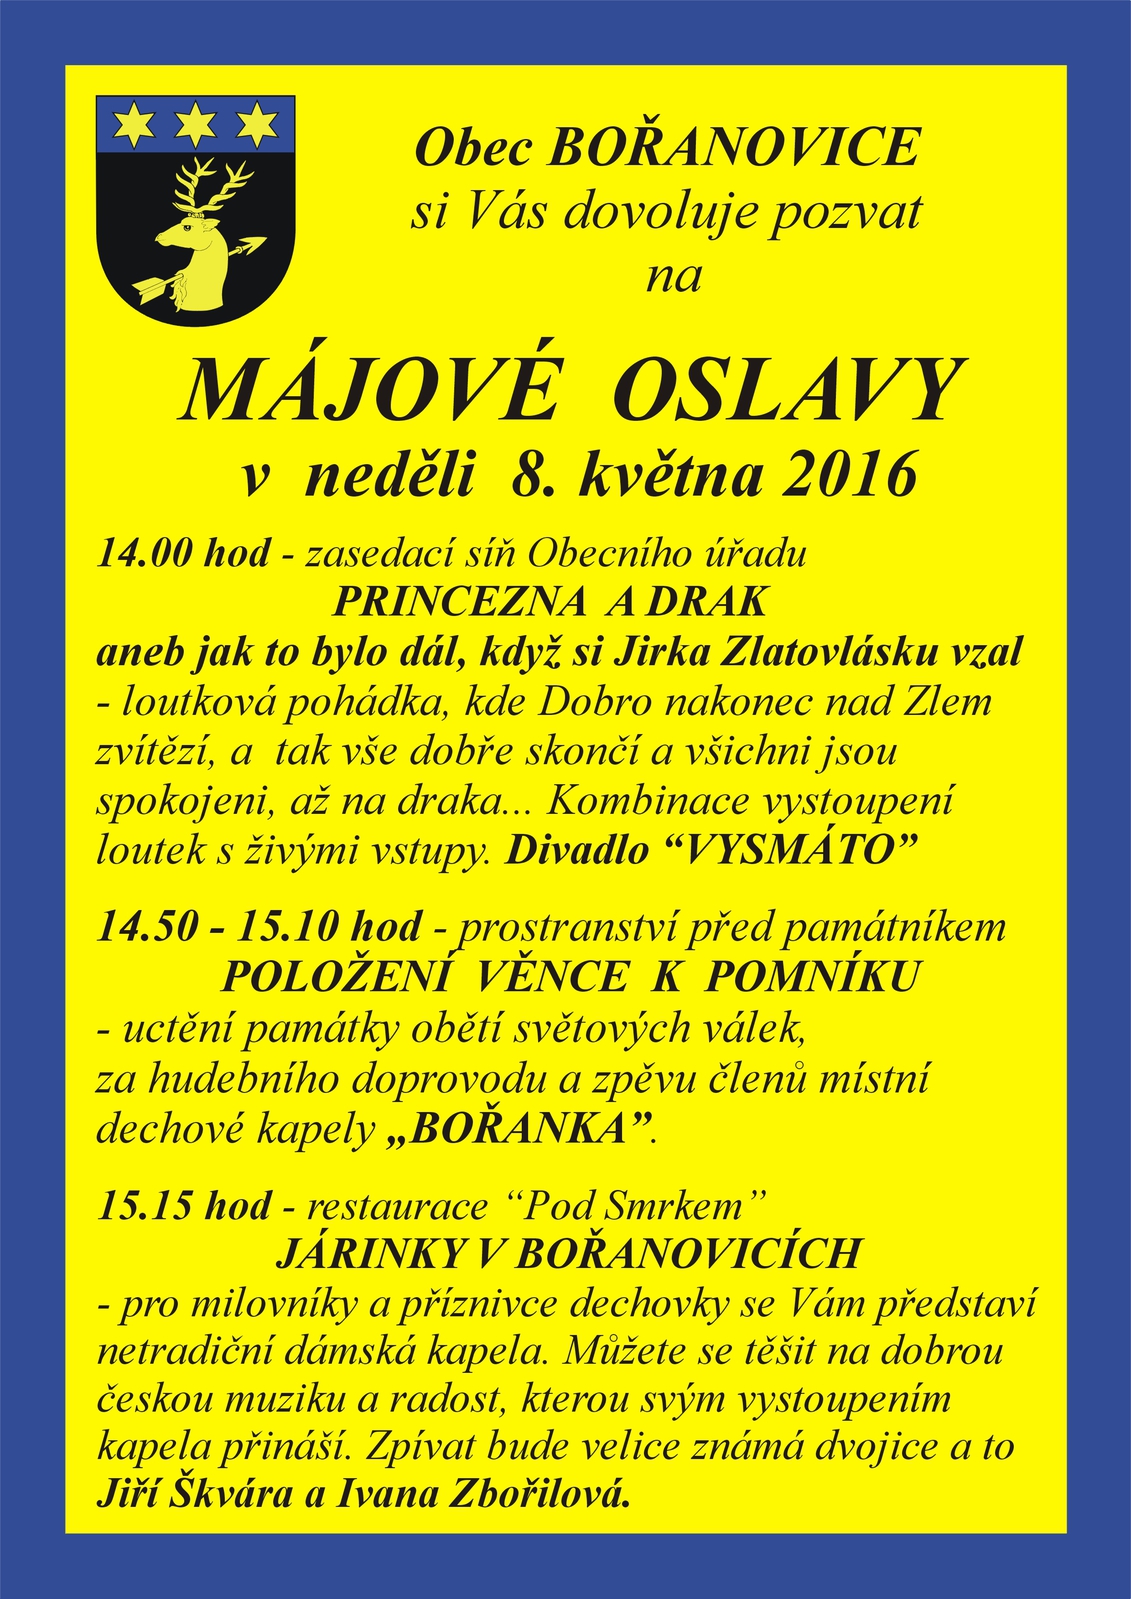 Plakát Májové oslavy 2016_Bořanovice.jpg